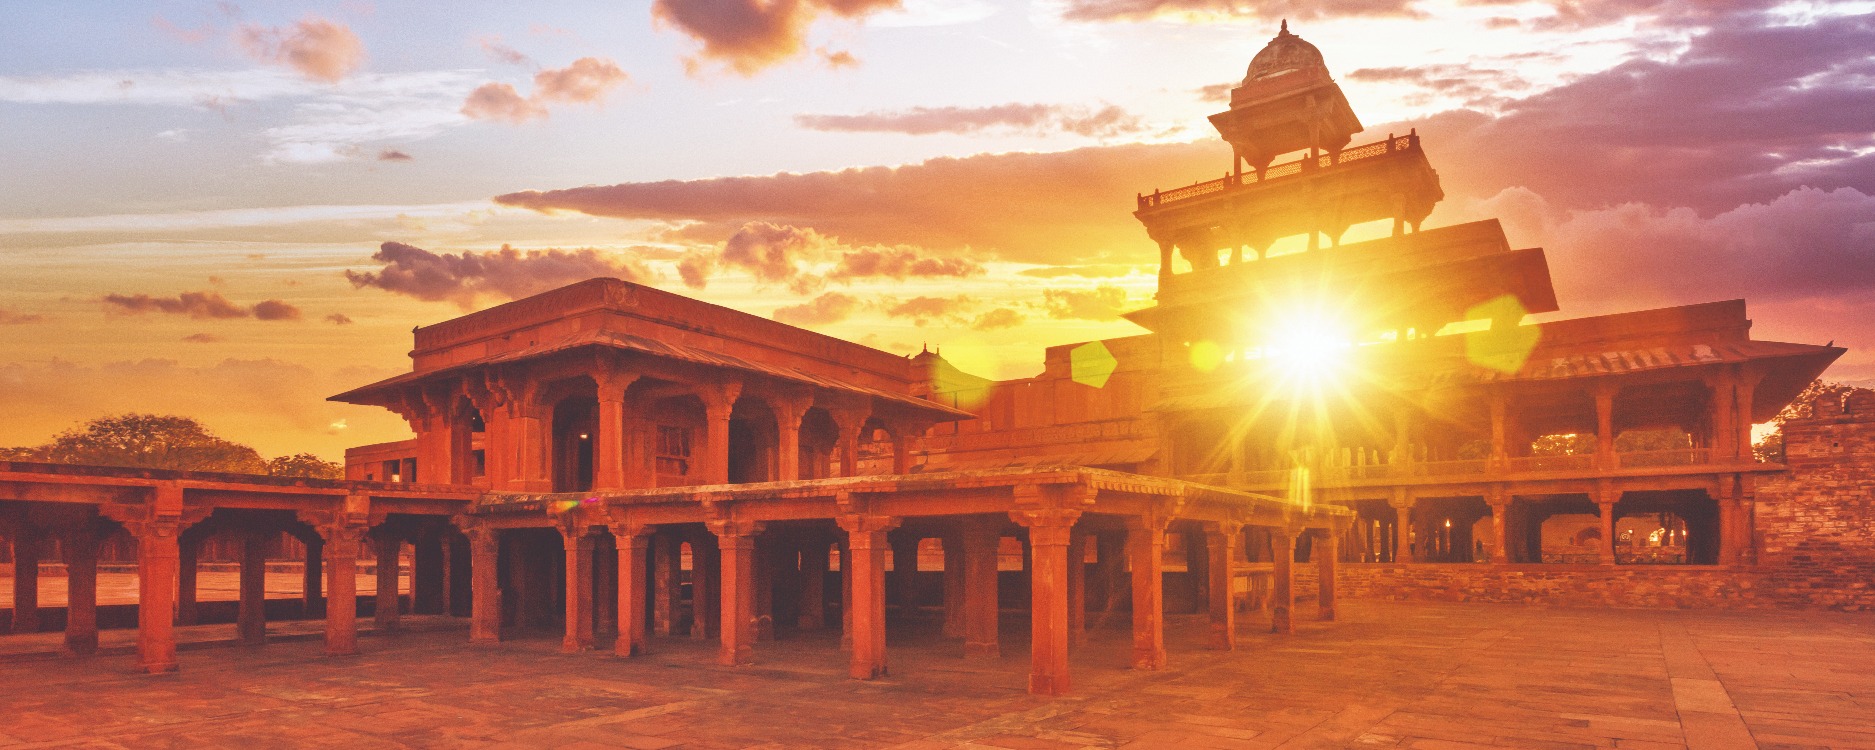 60036781_Fatehpur Sikri, Uttar Pradesh_1875x750